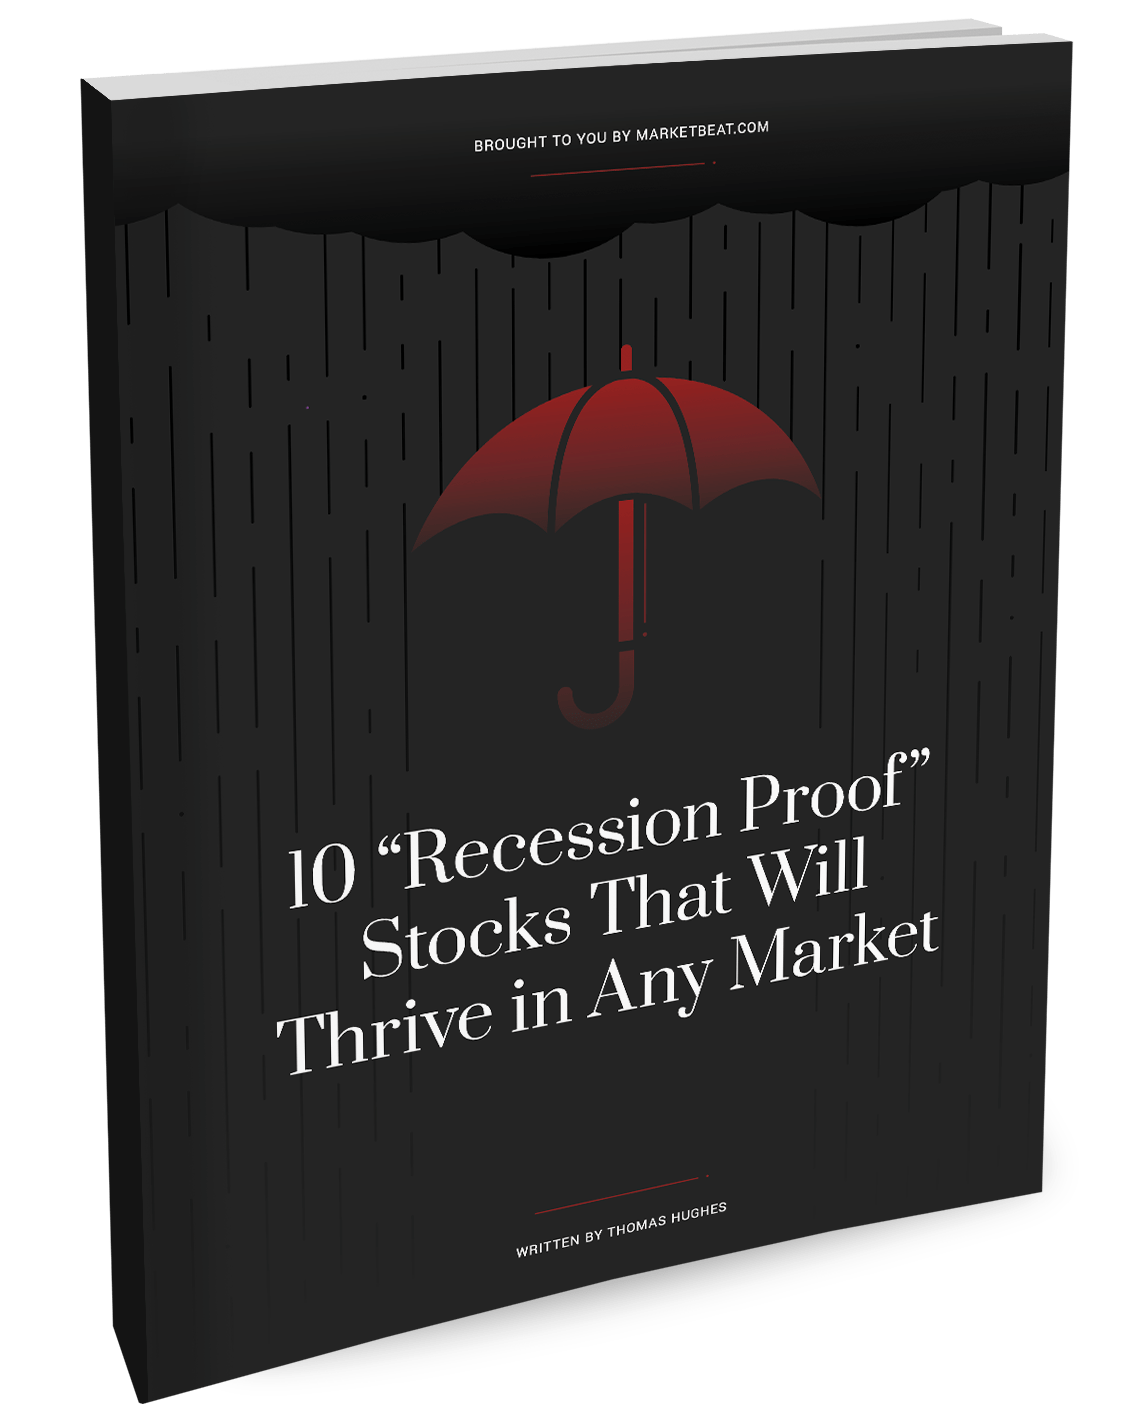 10 "Prueba de recesión" Acciones que prosperarán en cualquier cobertura de mercado